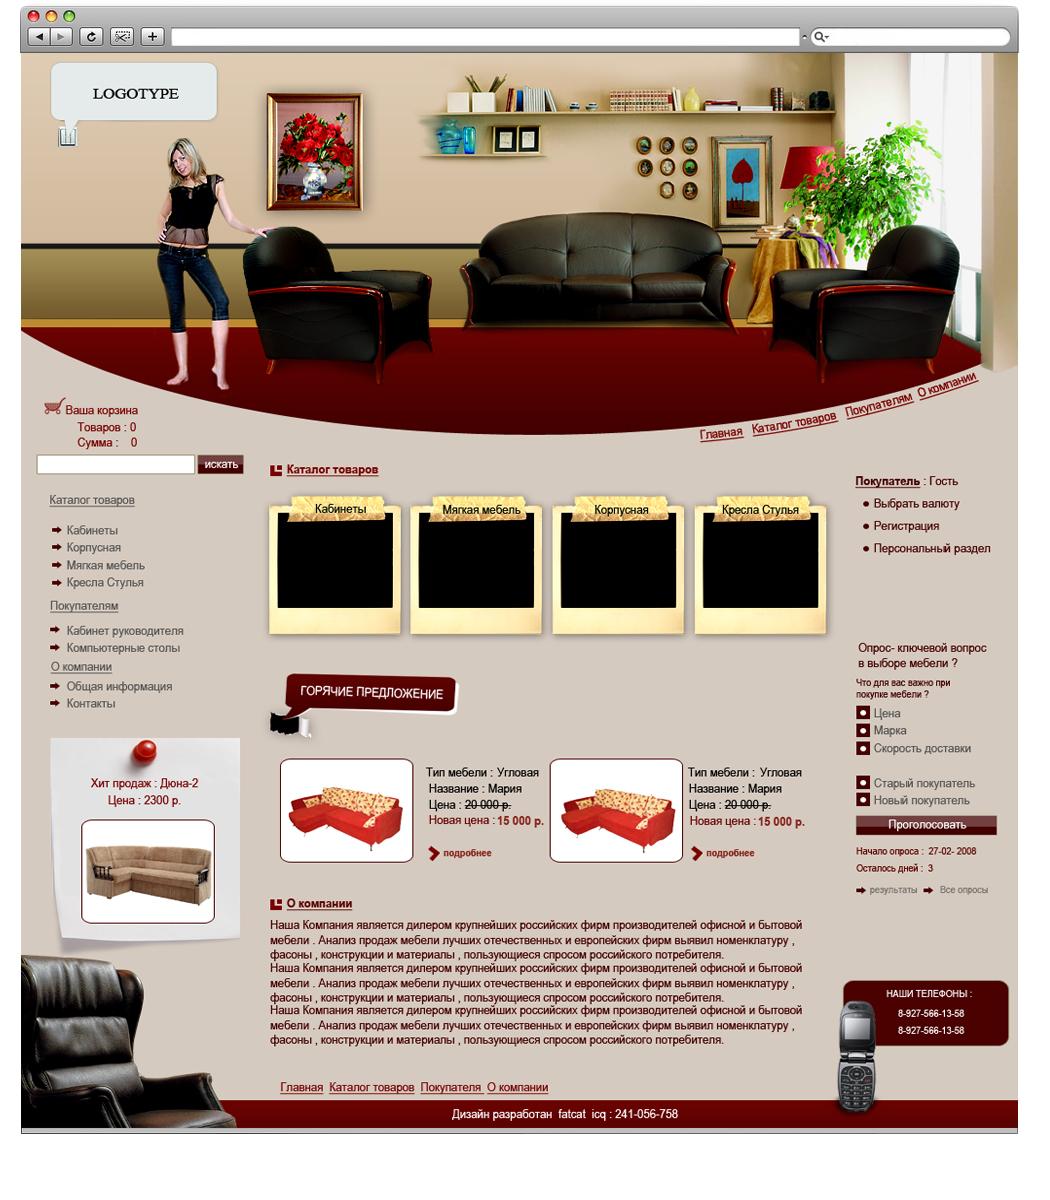 Дизайн мебельного сайта